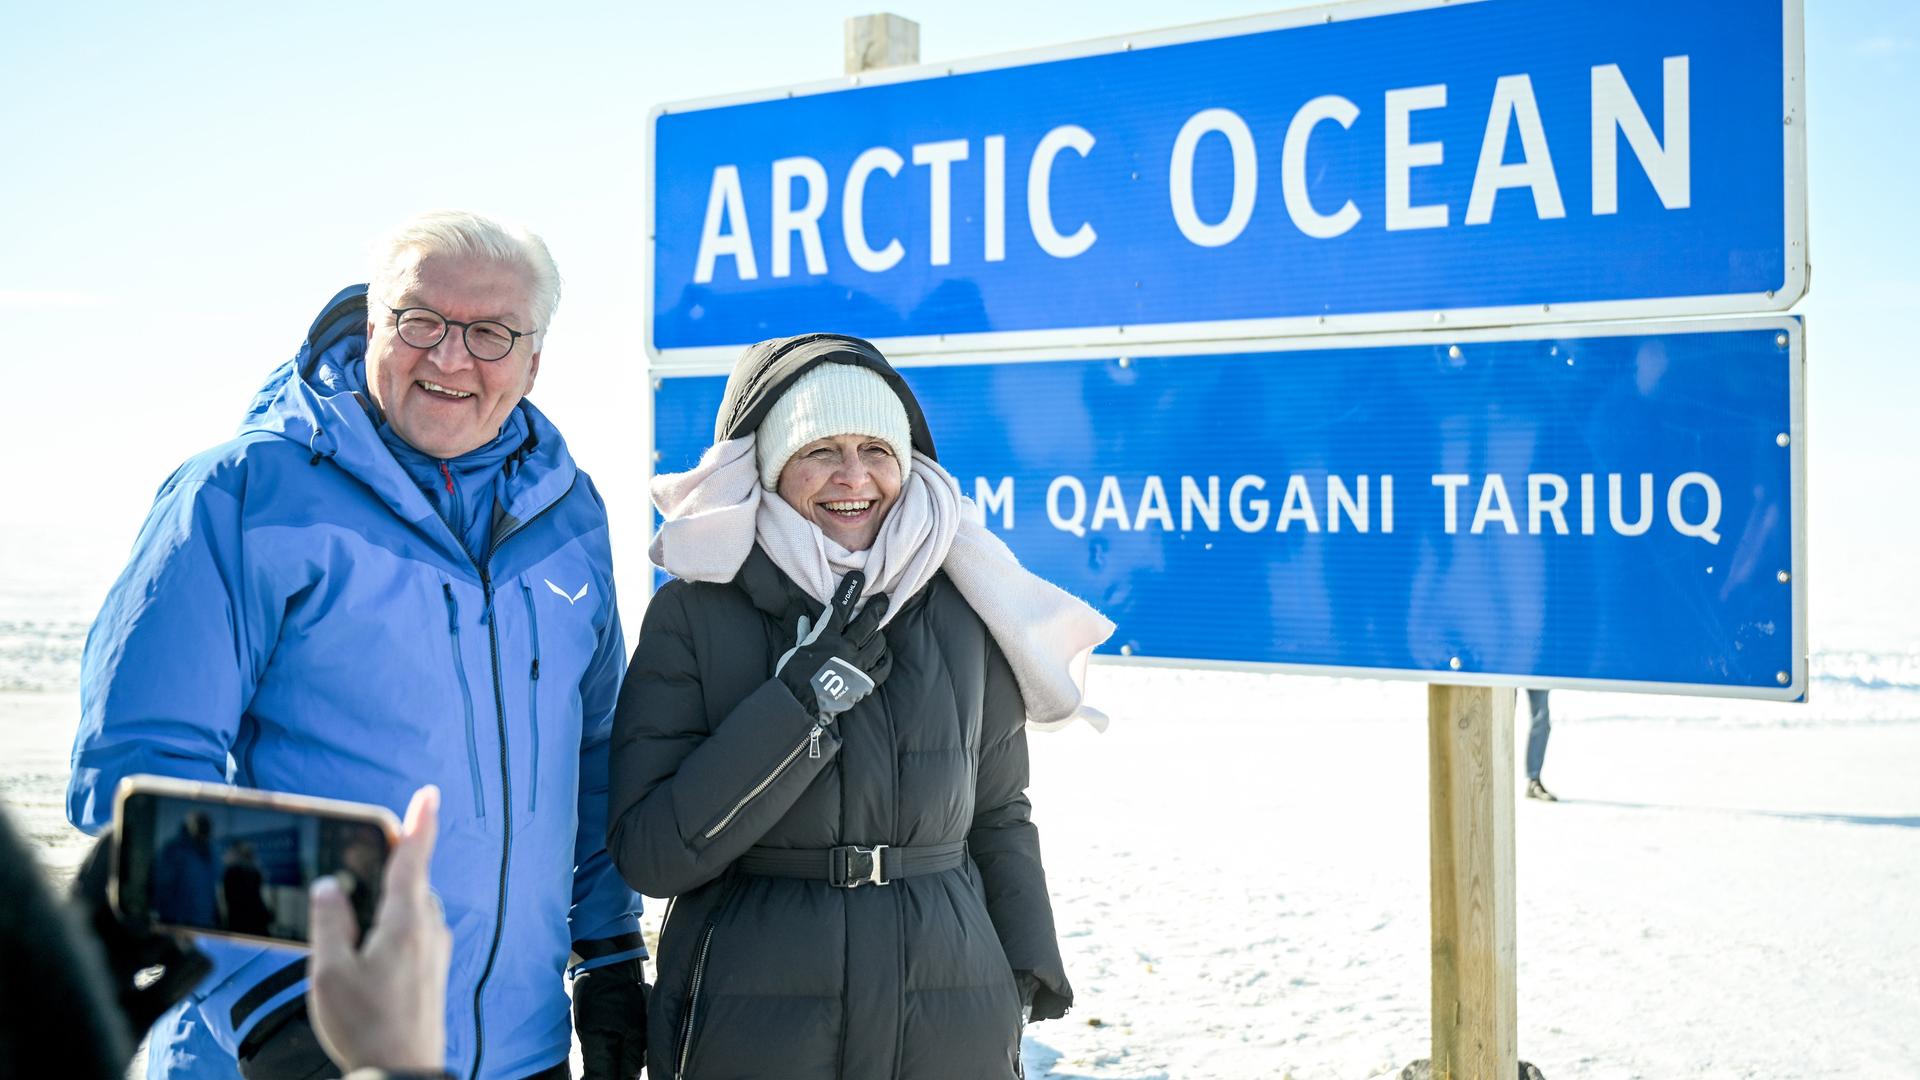 Bundespräsident Steinmeier und seine Frau Elke Büdenbender stehen in Anoraks in einer Schneelandschaft vor einem Schild mit der Aufschrift "Arctic Ocean".